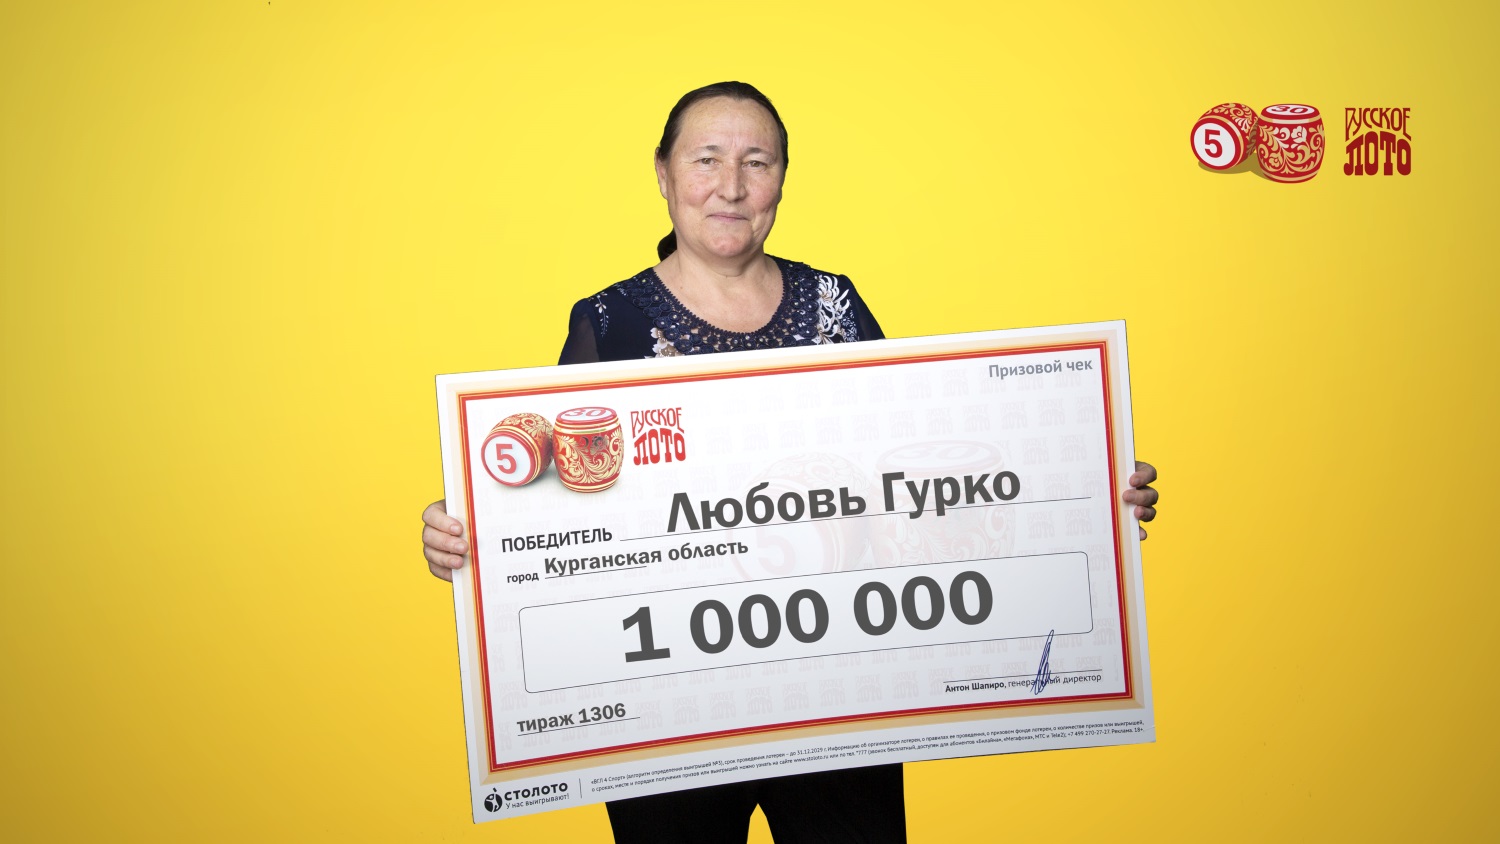 мегалот джекпот кто выиграл 1000000 руб